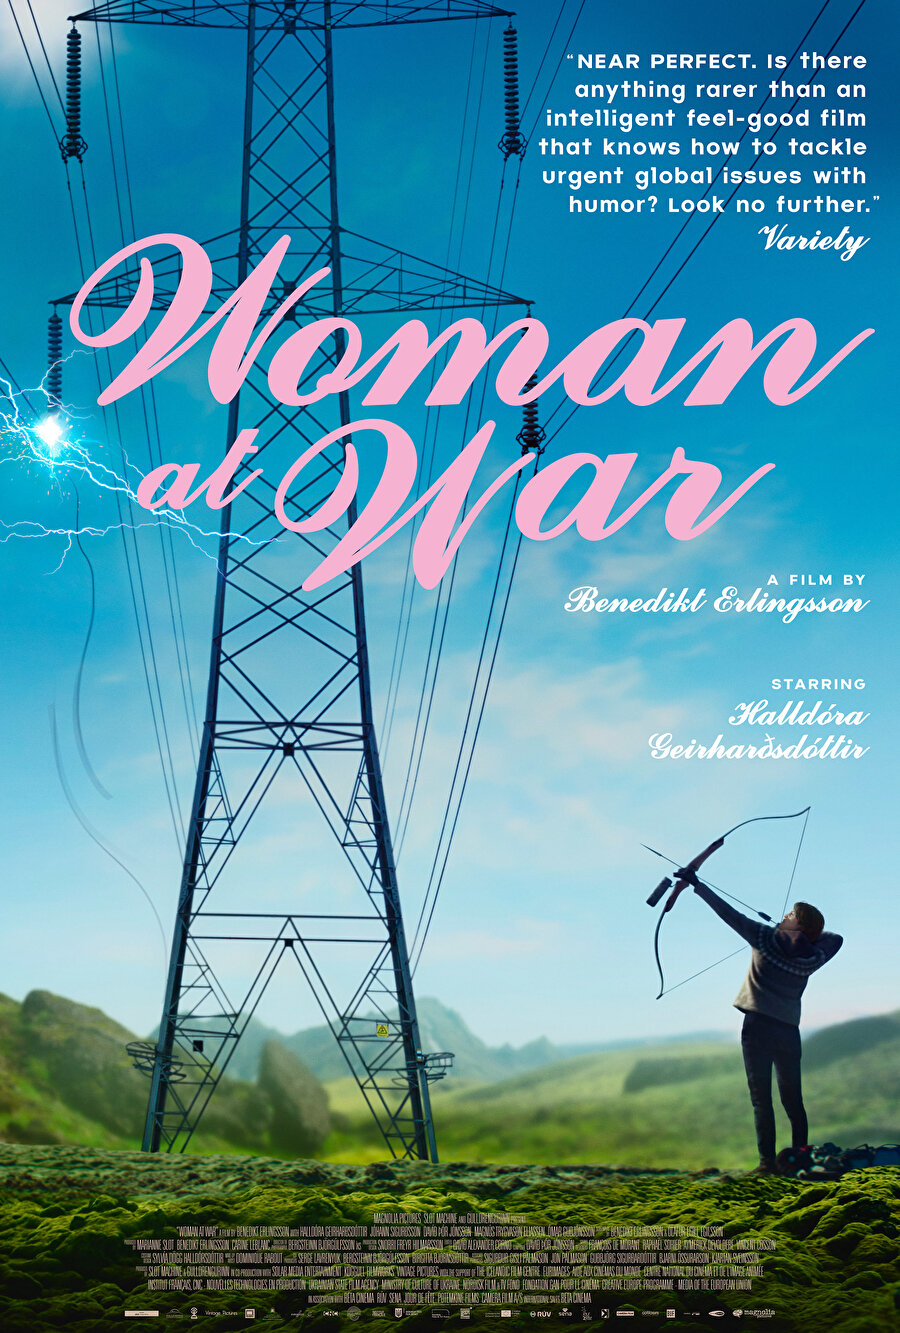 4. Woman at War
2018 Cannes Film Festivali'nde SACD Ödülü'ne layık görülen İzlanda yapımı "Woman at War", yerel alüminyum endüstrisine karşı amansız bir savaş açan bir kadının bir mektubun akabinde almak zorunda kaldığı kararı konu ediniyor.Benedikt Erlingsson'un yönettiği filmde; Halldora Geirharosdottir, Jörundur Ragnarsson, Johann Siguroarson, Juan Camillo Roman Estrada ve Vala Kristin Eiriksdottir gibi isimler başrolde.